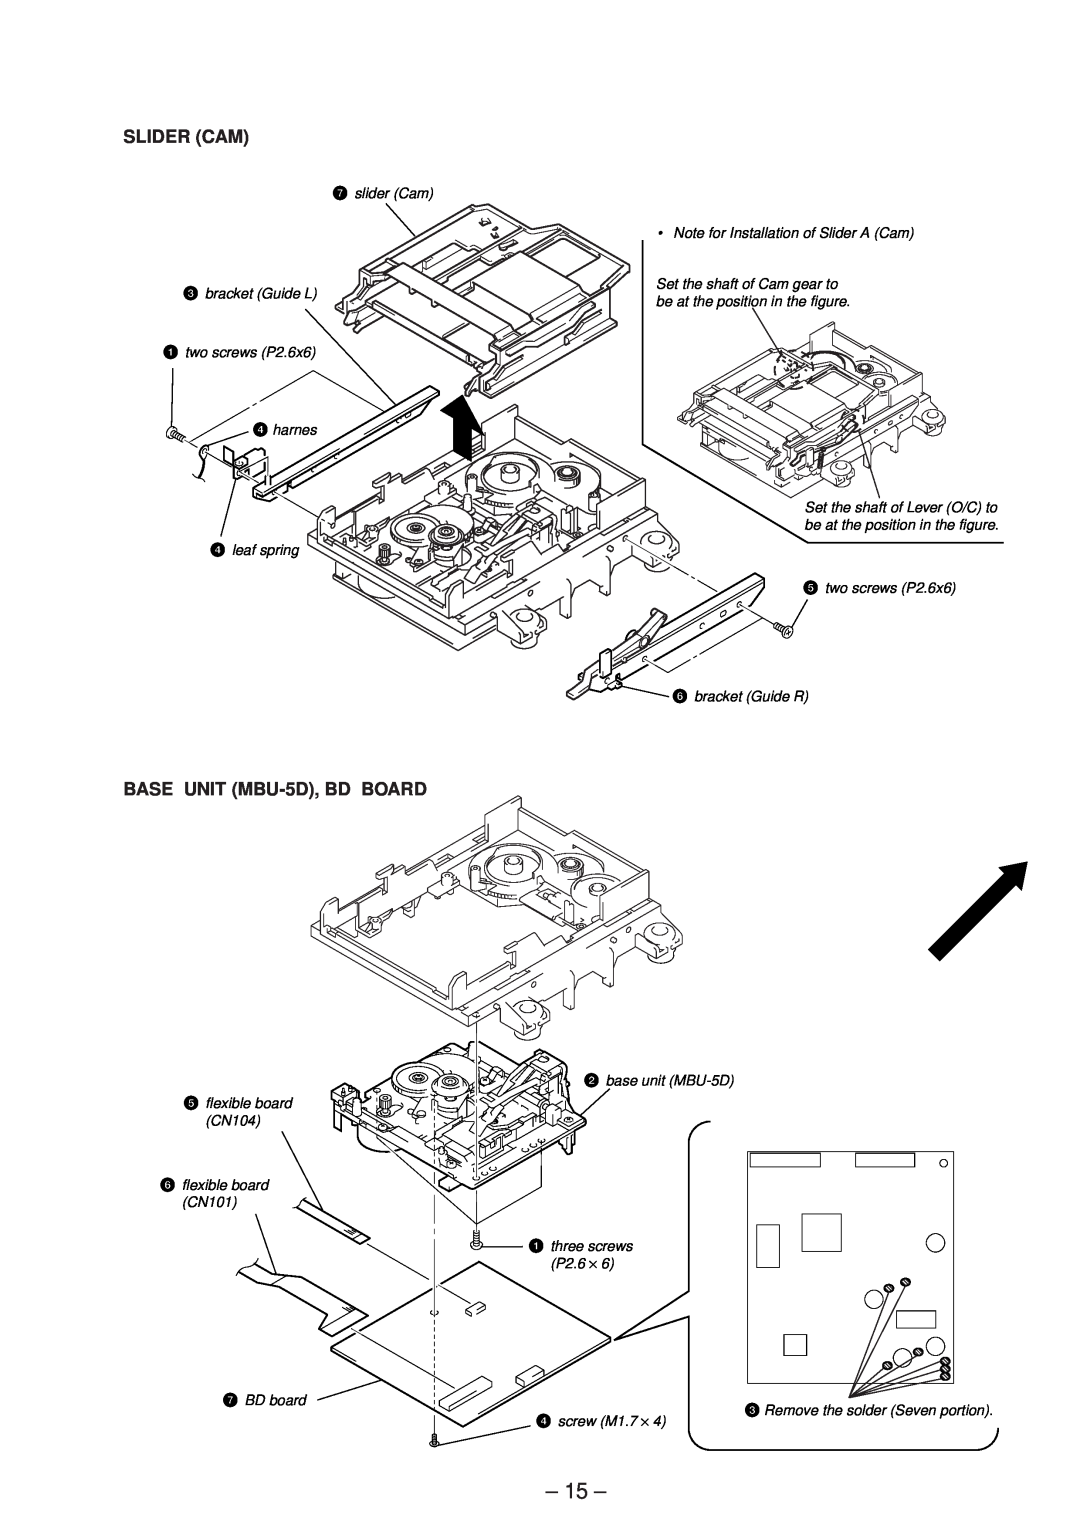 Sony MDS-JE530 service manual 15, Slider Cam, BASE UNIT MBU-5D,BD BOARD 